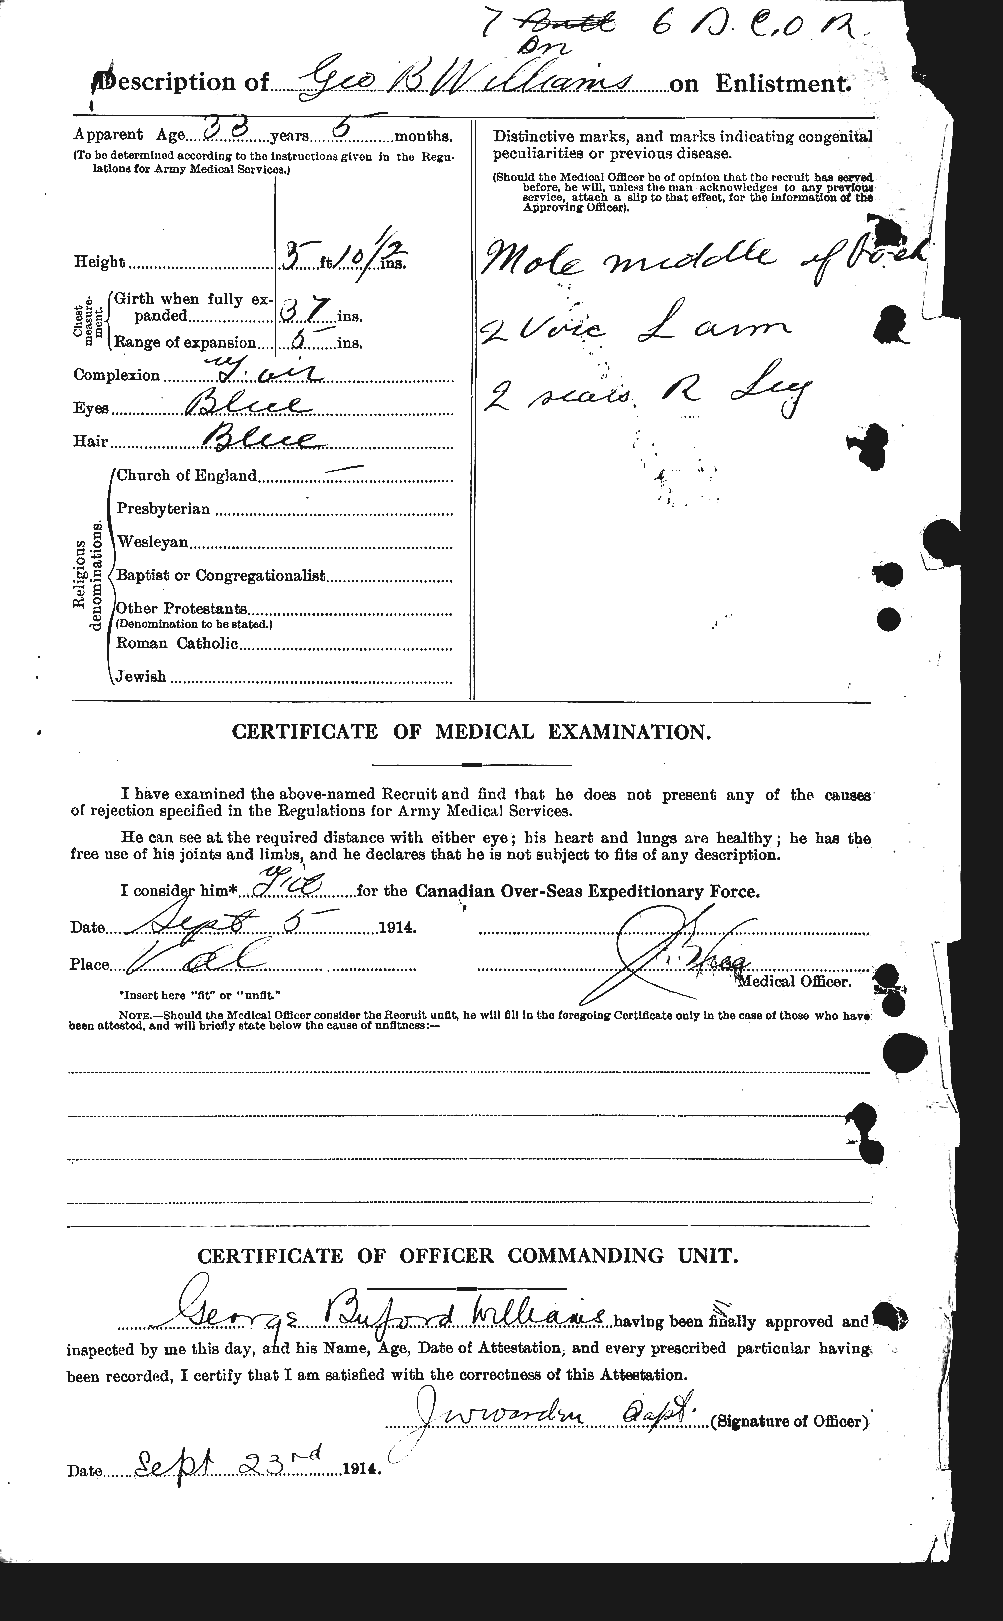 Dossiers du Personnel de la Première Guerre mondiale - CEC 676031b